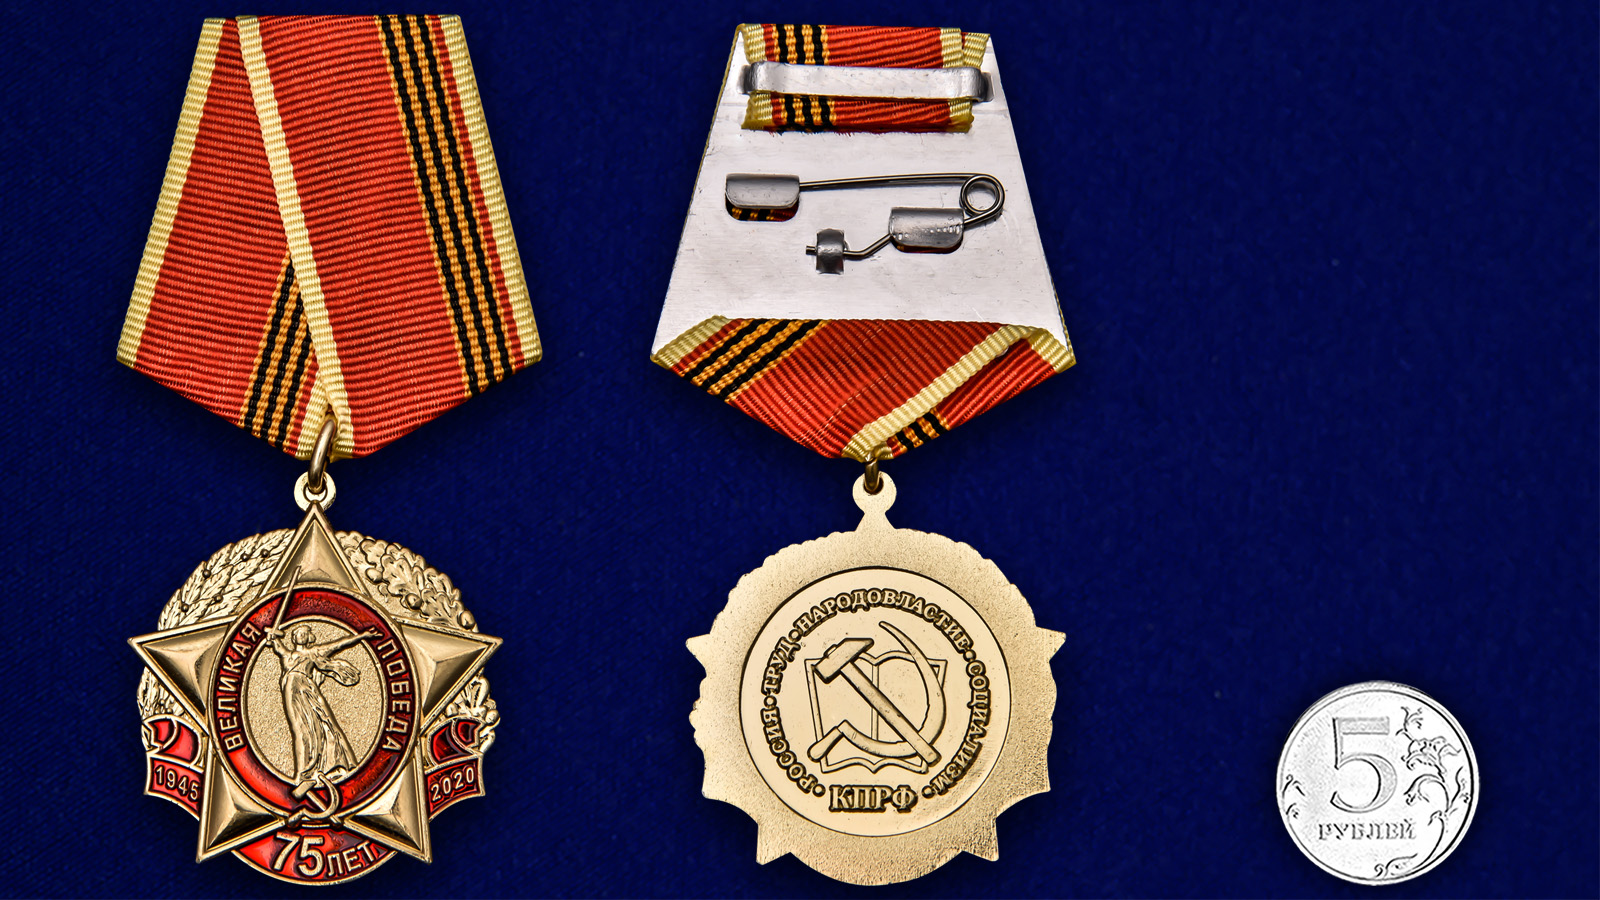 Латунная медаль "75 лет Великой Победы" КПРФ 